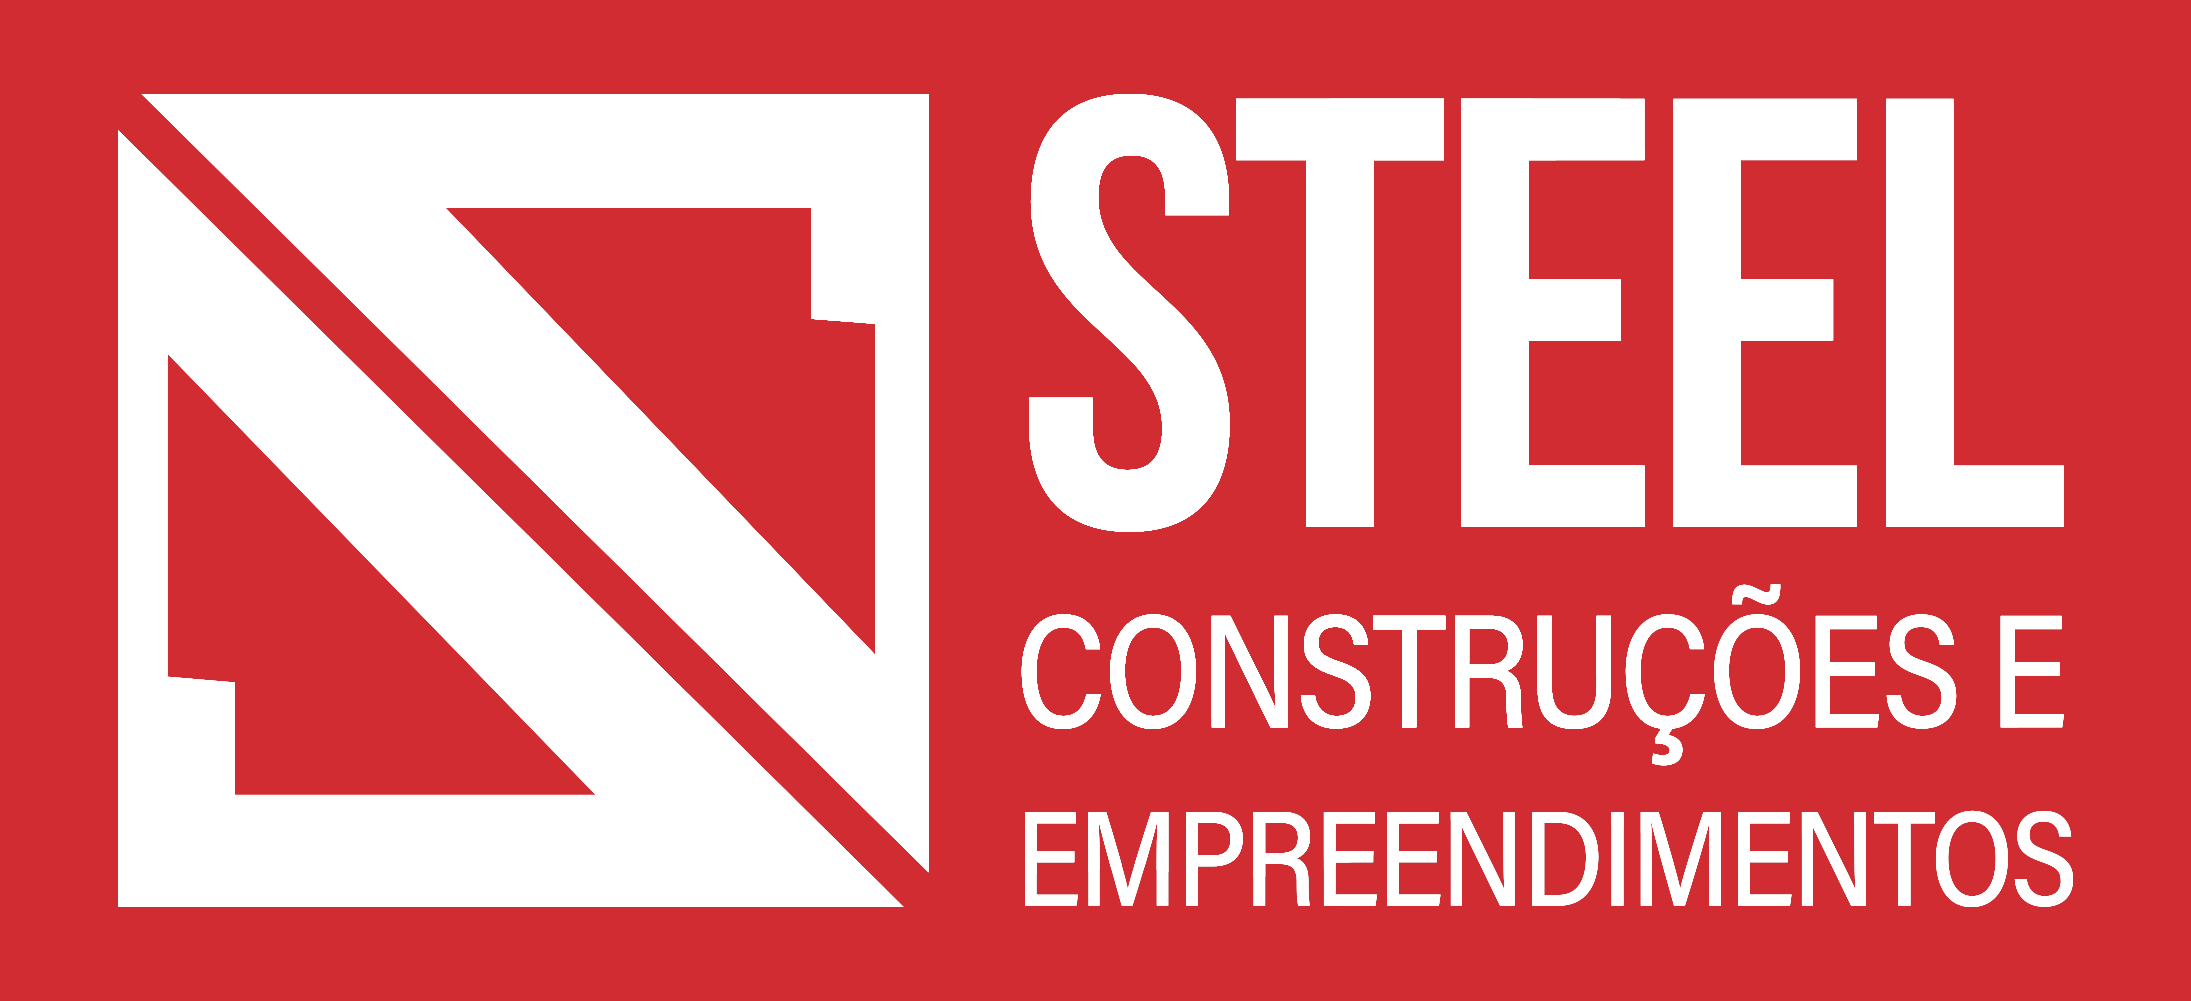 steel logo